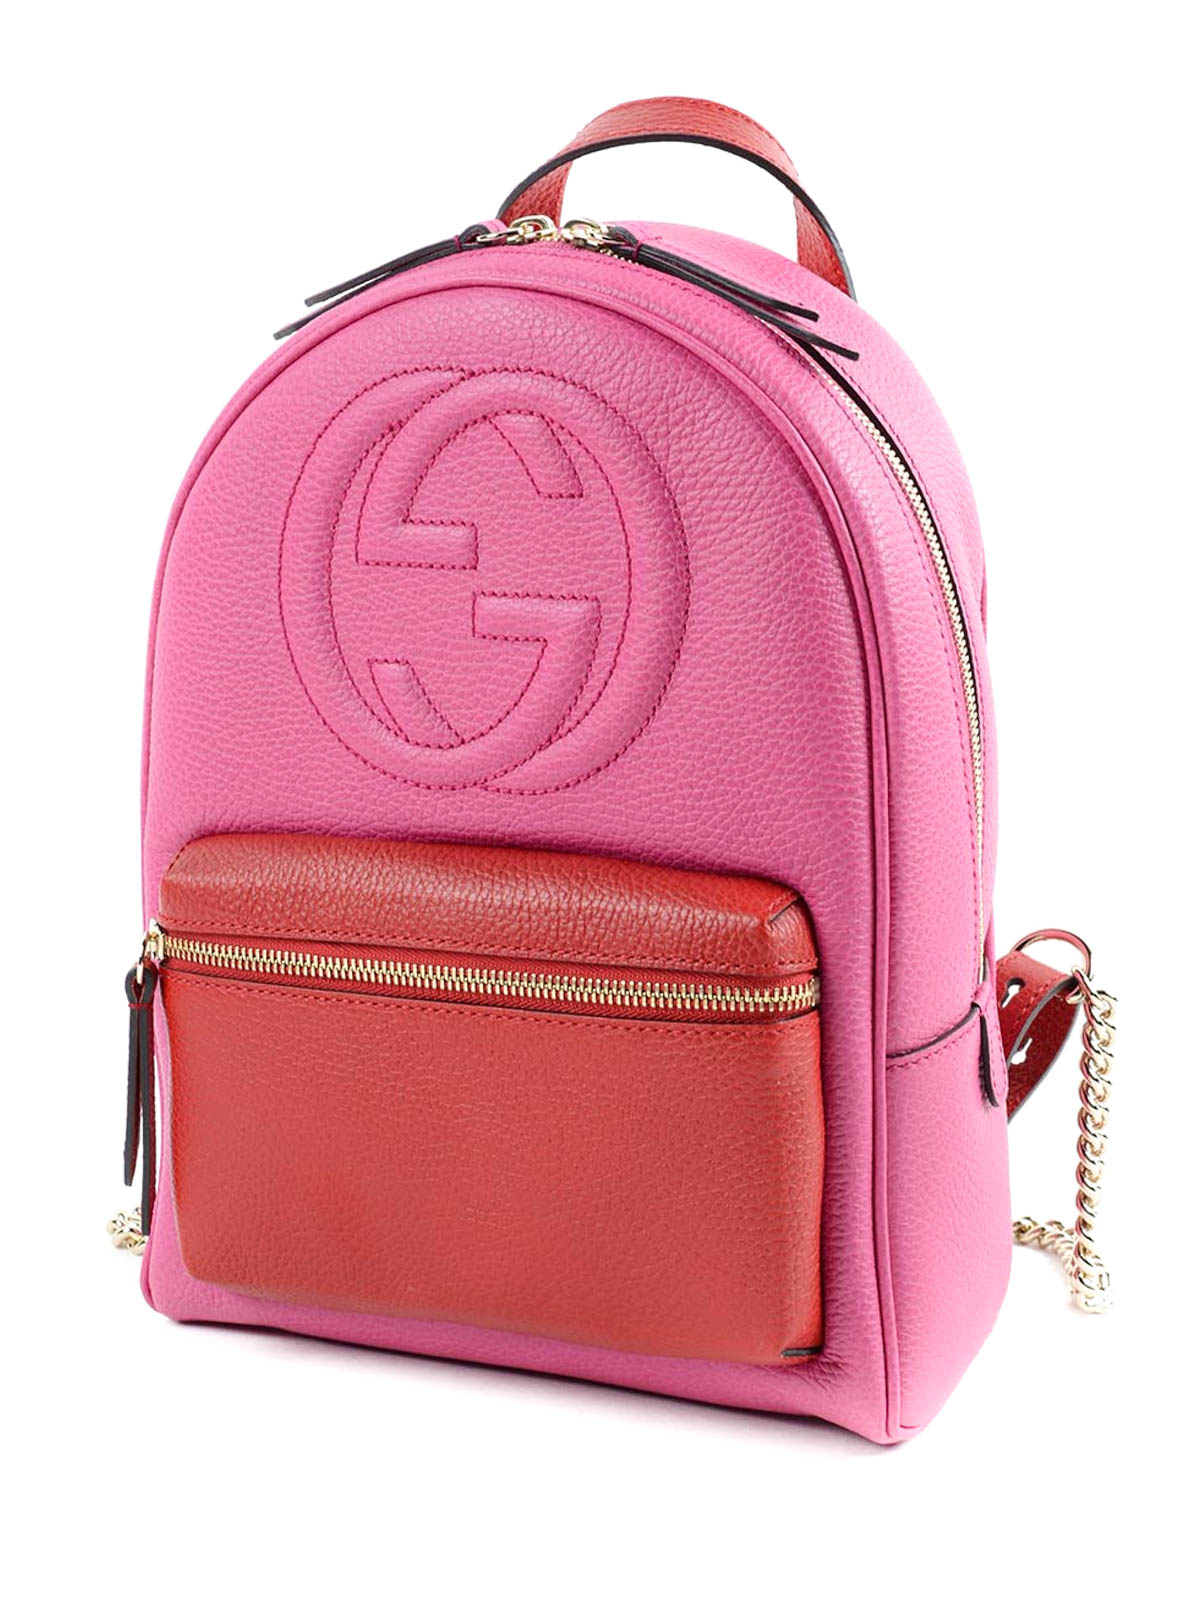 Gucci - Soho backpack - backpacks - 431570 CAO2G 5592 | 0